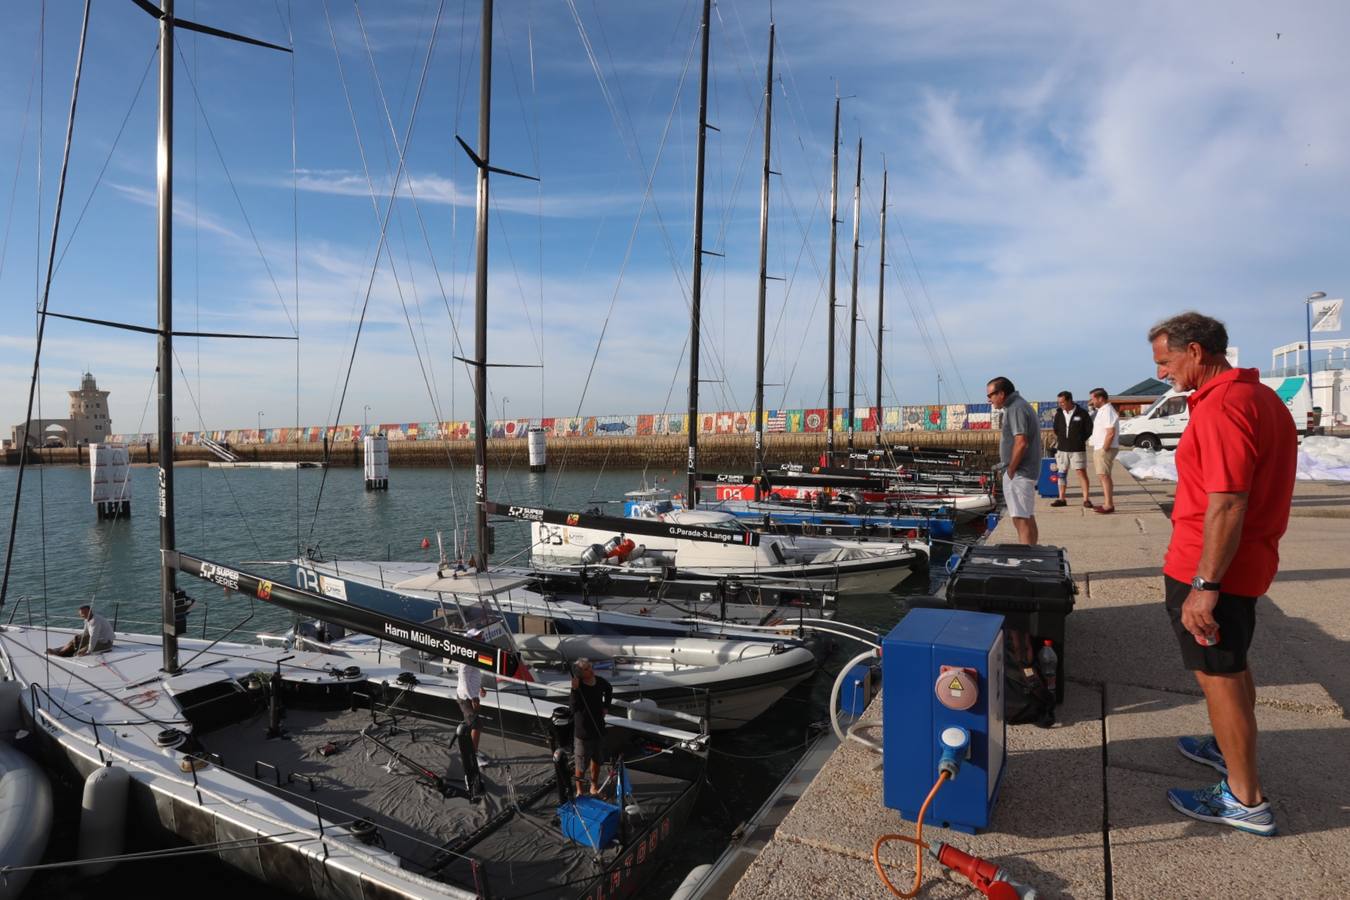 Fotos: Preparativos para la regata Puerto Sherry Royal Cup en la Bahía de Cádiz